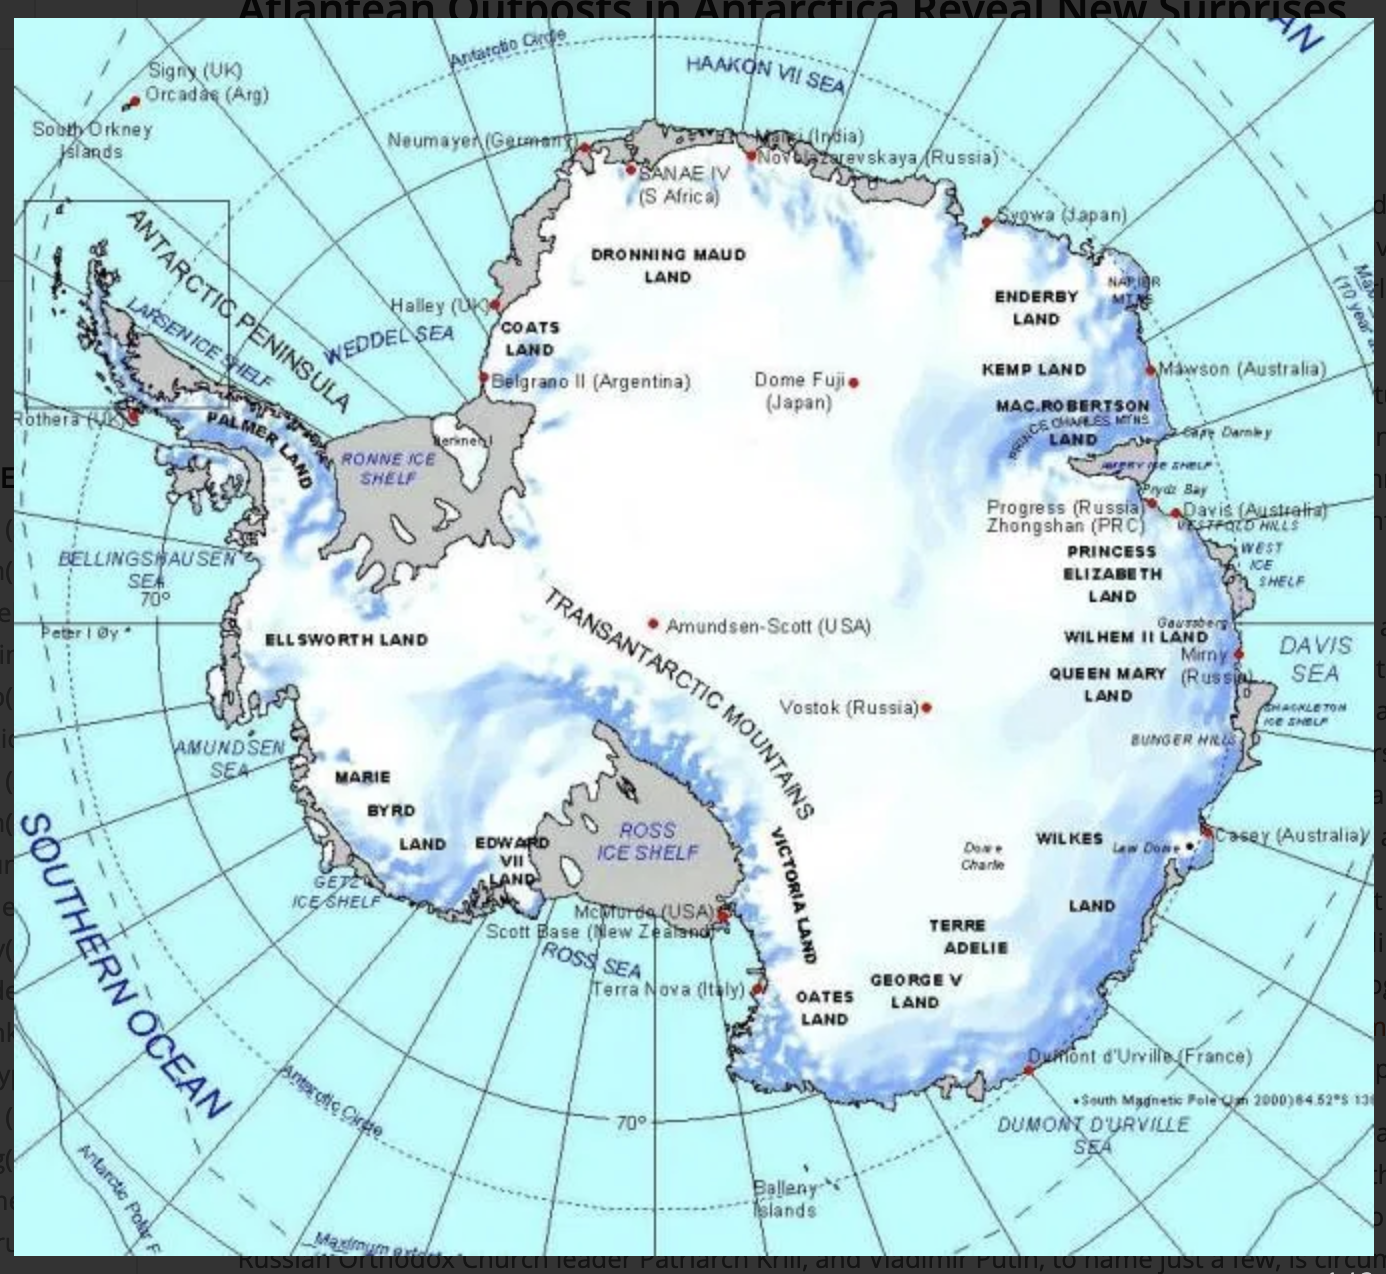 Антарктические широты. Полуостров Челюскинцев на карте Антарктиды. Остров Петра 1 на карте Антарктиды. Полюс недоступности в Антарктиде на карте. Долина МГГ на карте Антарктиды.